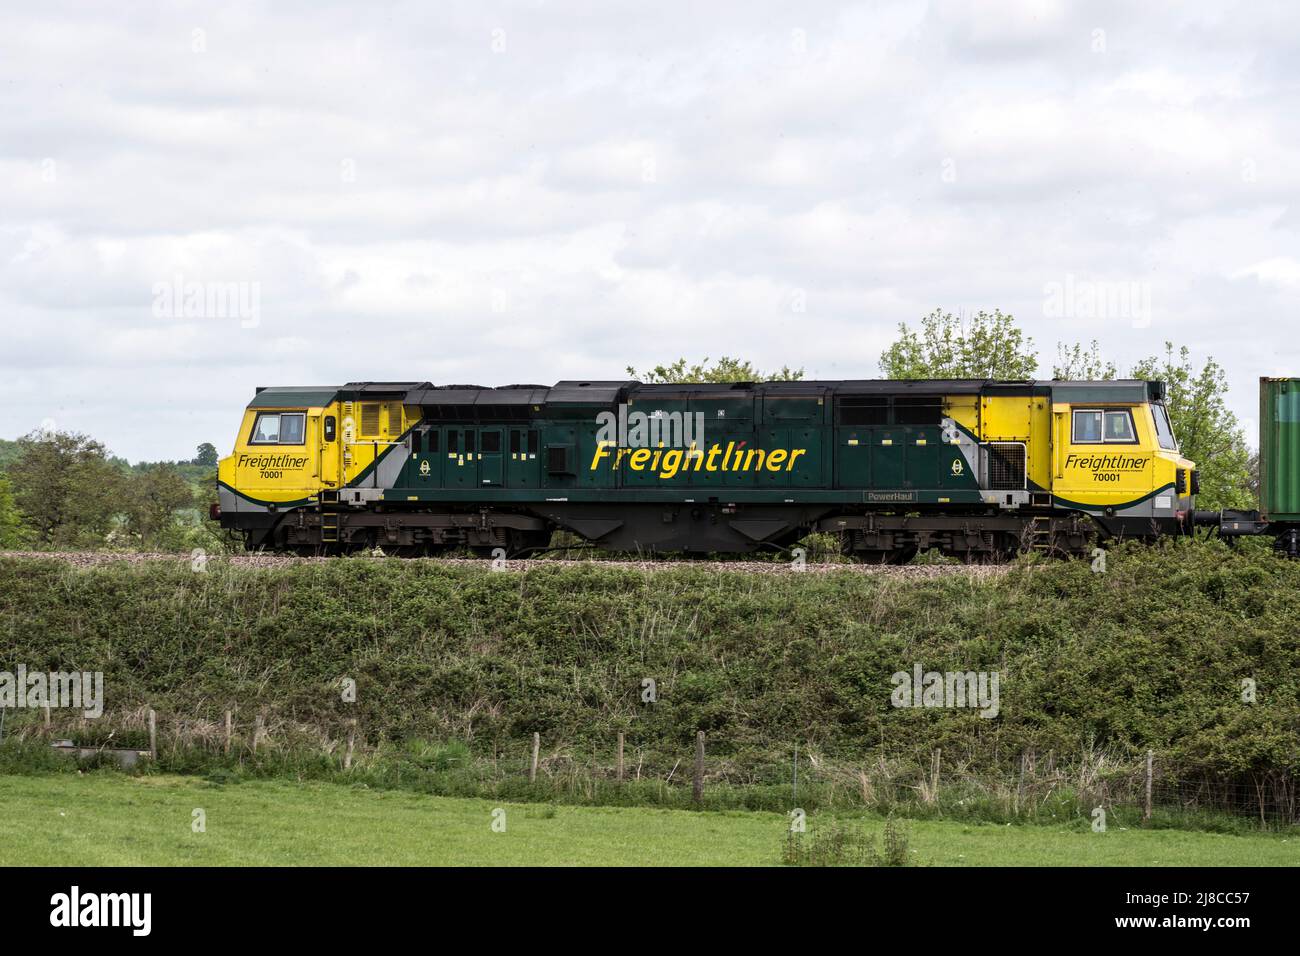 Freightliner Baureihe 70 Diesellokomotive Nr. 70001 mit einem freightliner-Zug, Warwickshire, Großbritannien Stockfoto